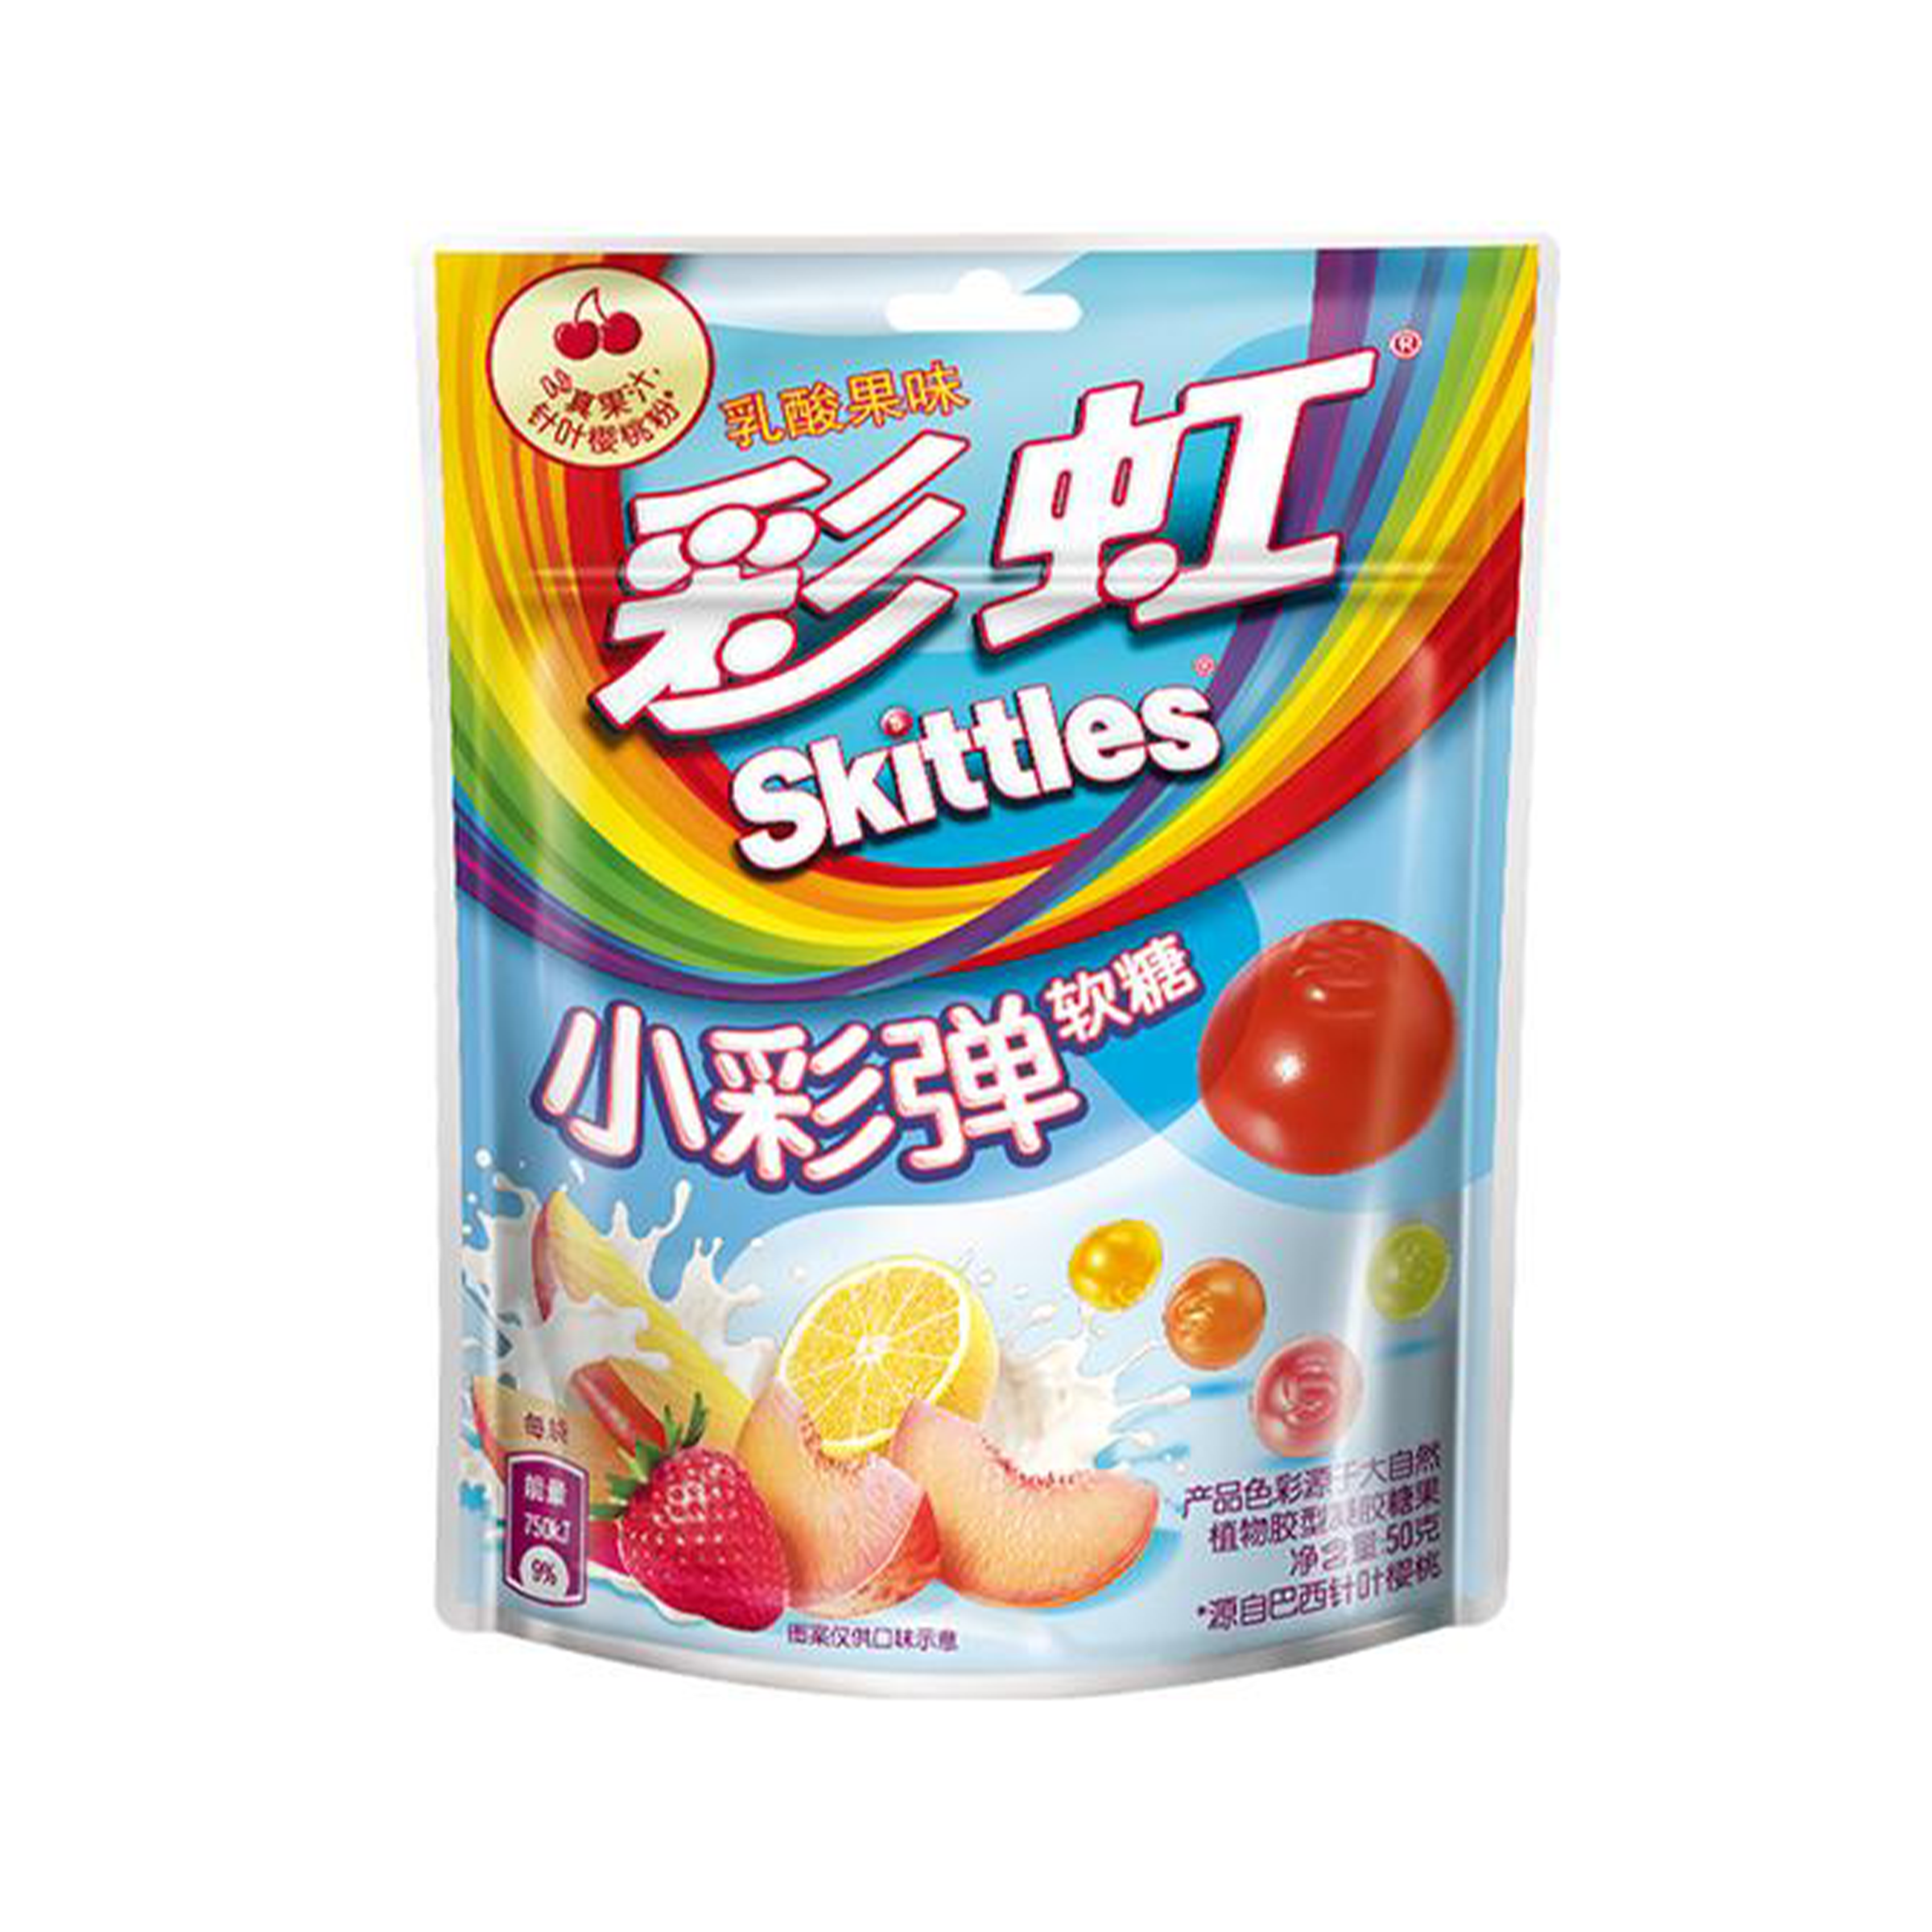 Skittles Gummy Yogurt - China